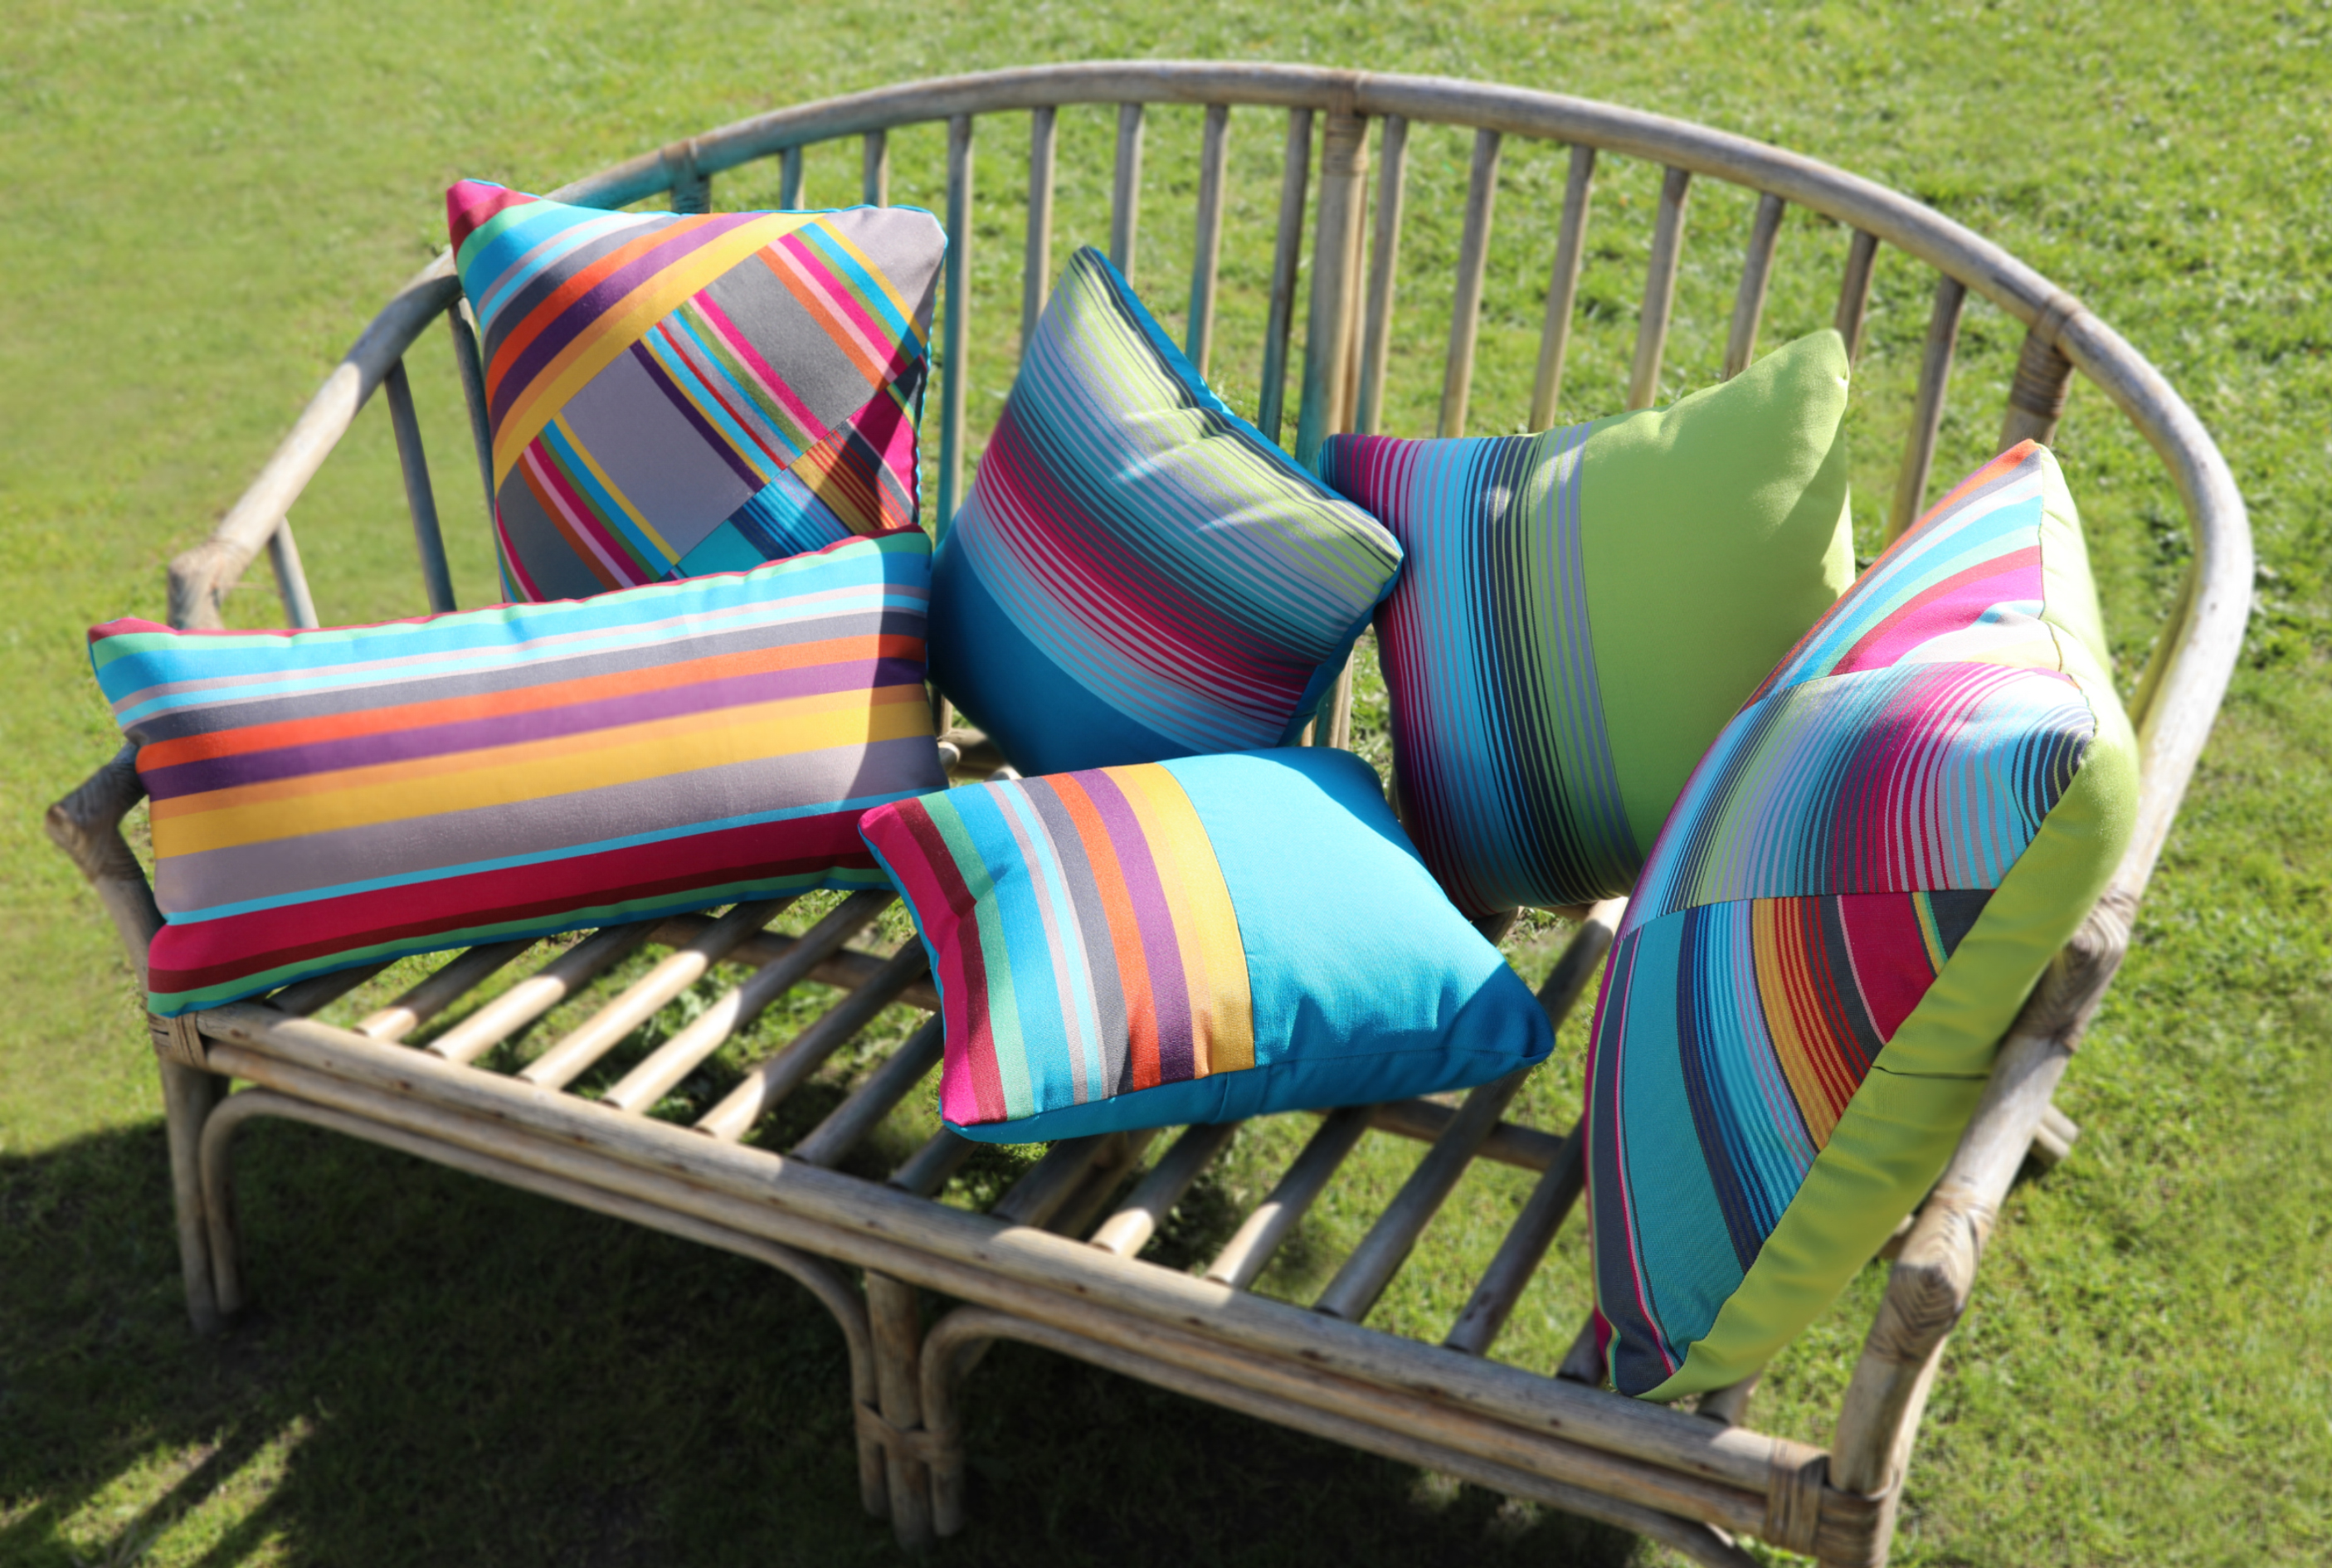 Coussins pour fauteuil de jardin : colorez votre extérieur !